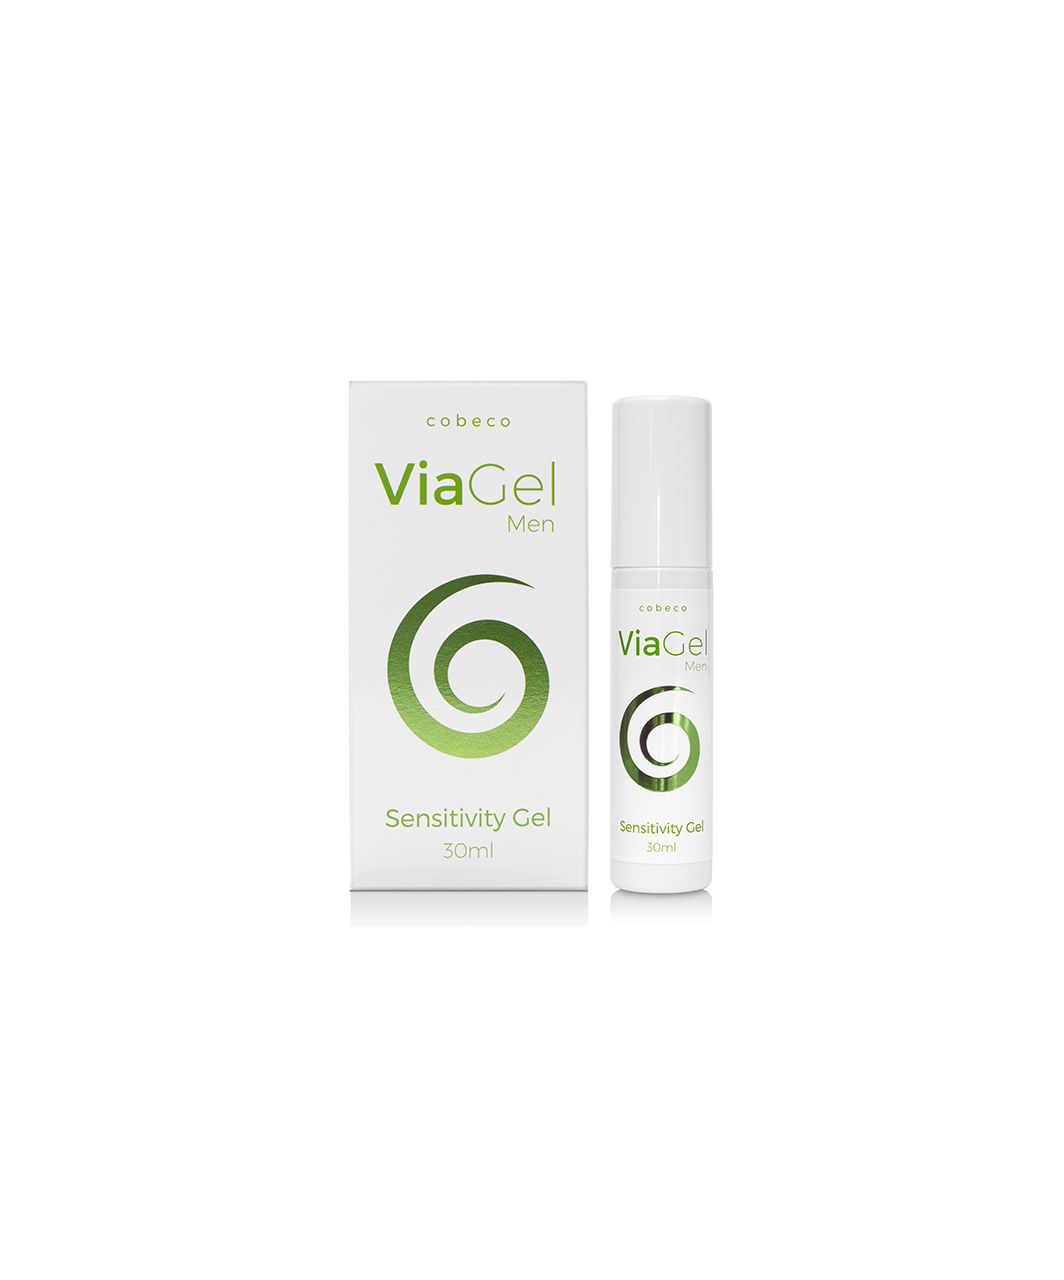 ViaGel stimuliuojamasis gelis vyrams (30 ml)